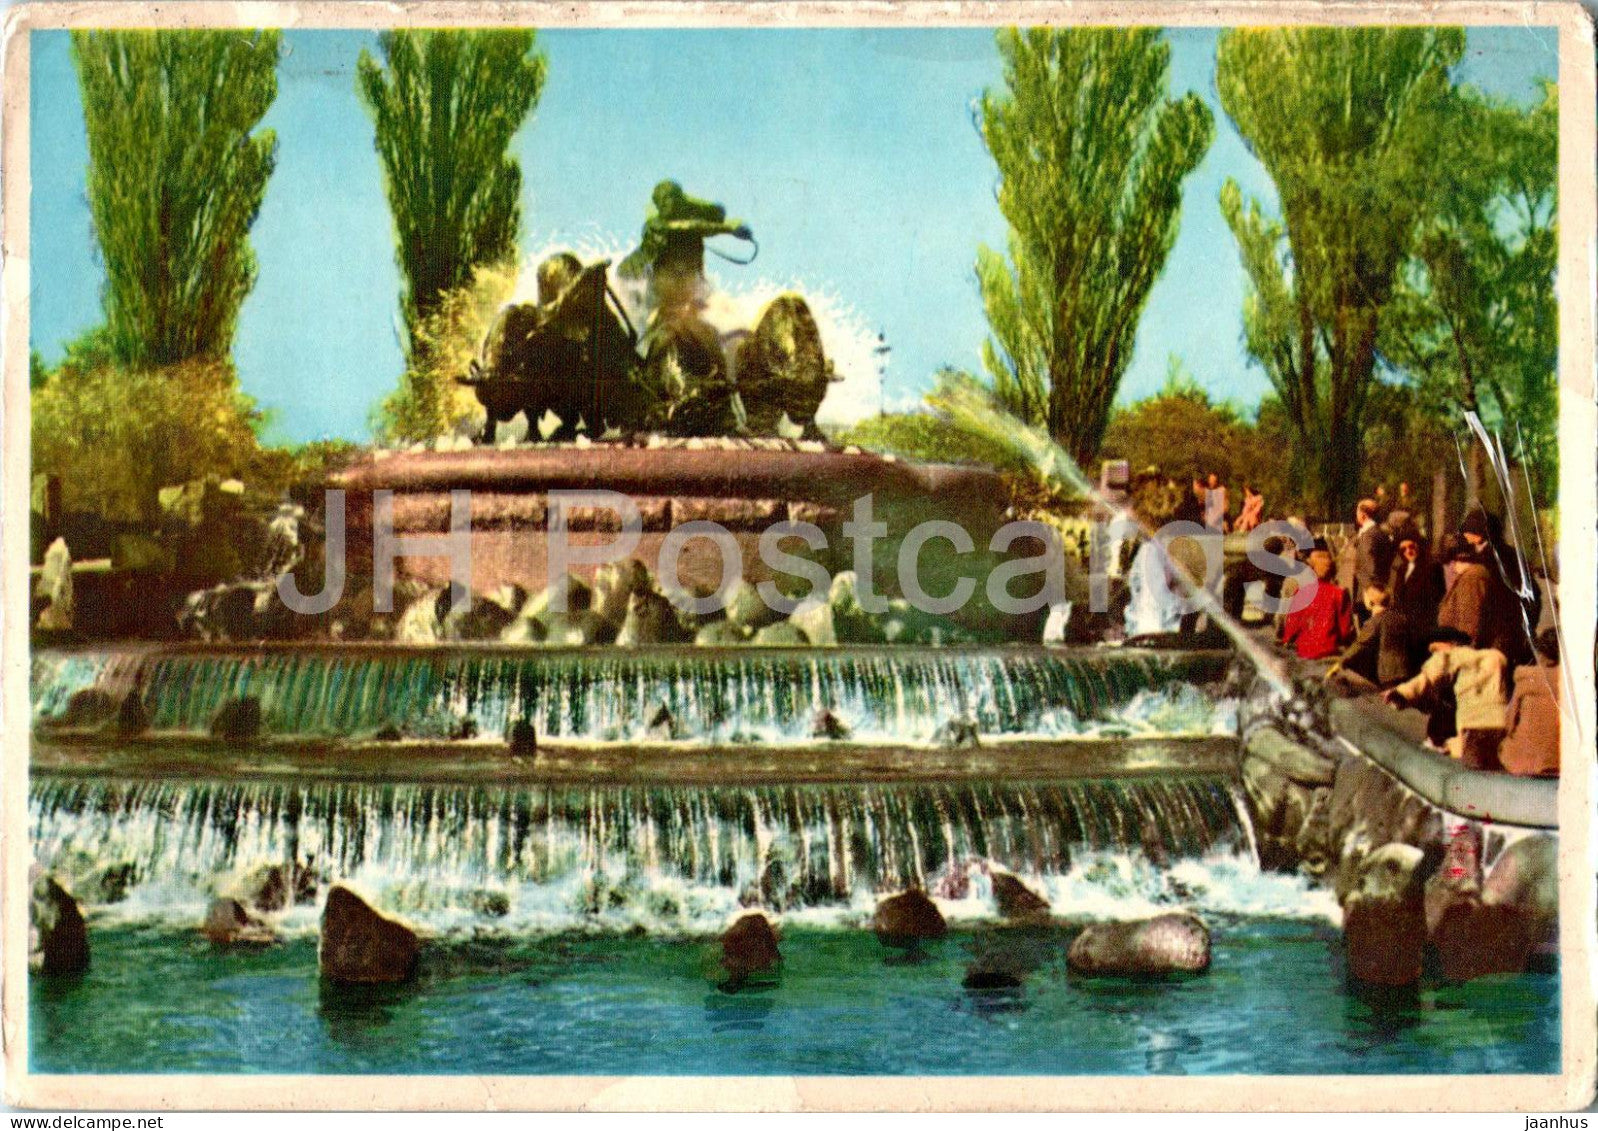 Copenhagen - Kobenhavn - Gefion Springvandet - The Gefion Fountains - Denmark - used - JH Postcards